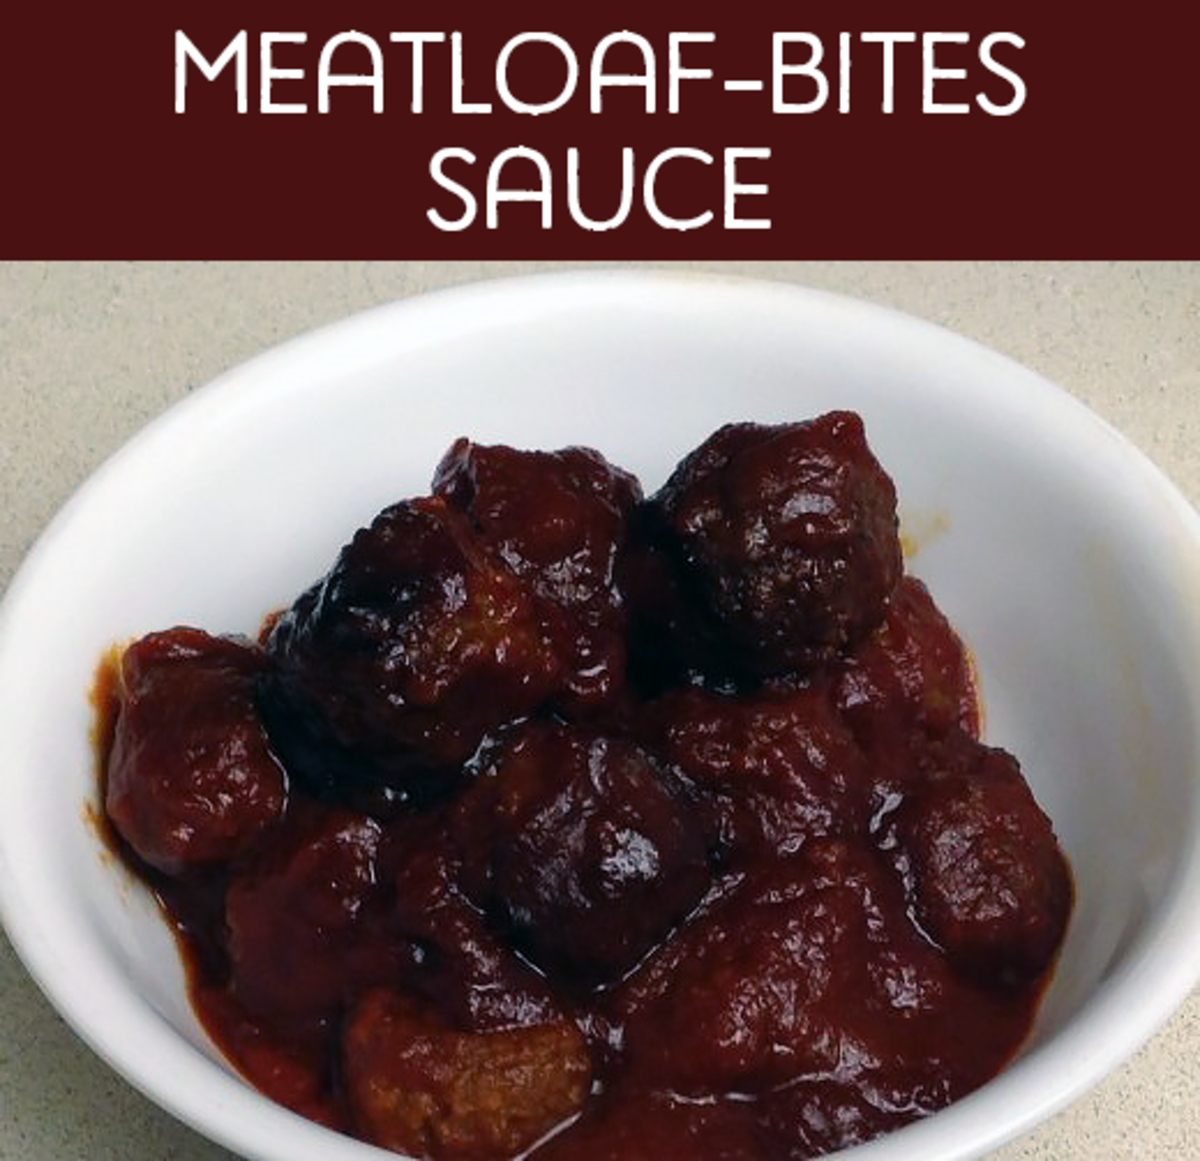 Little meatloaf bites sauce